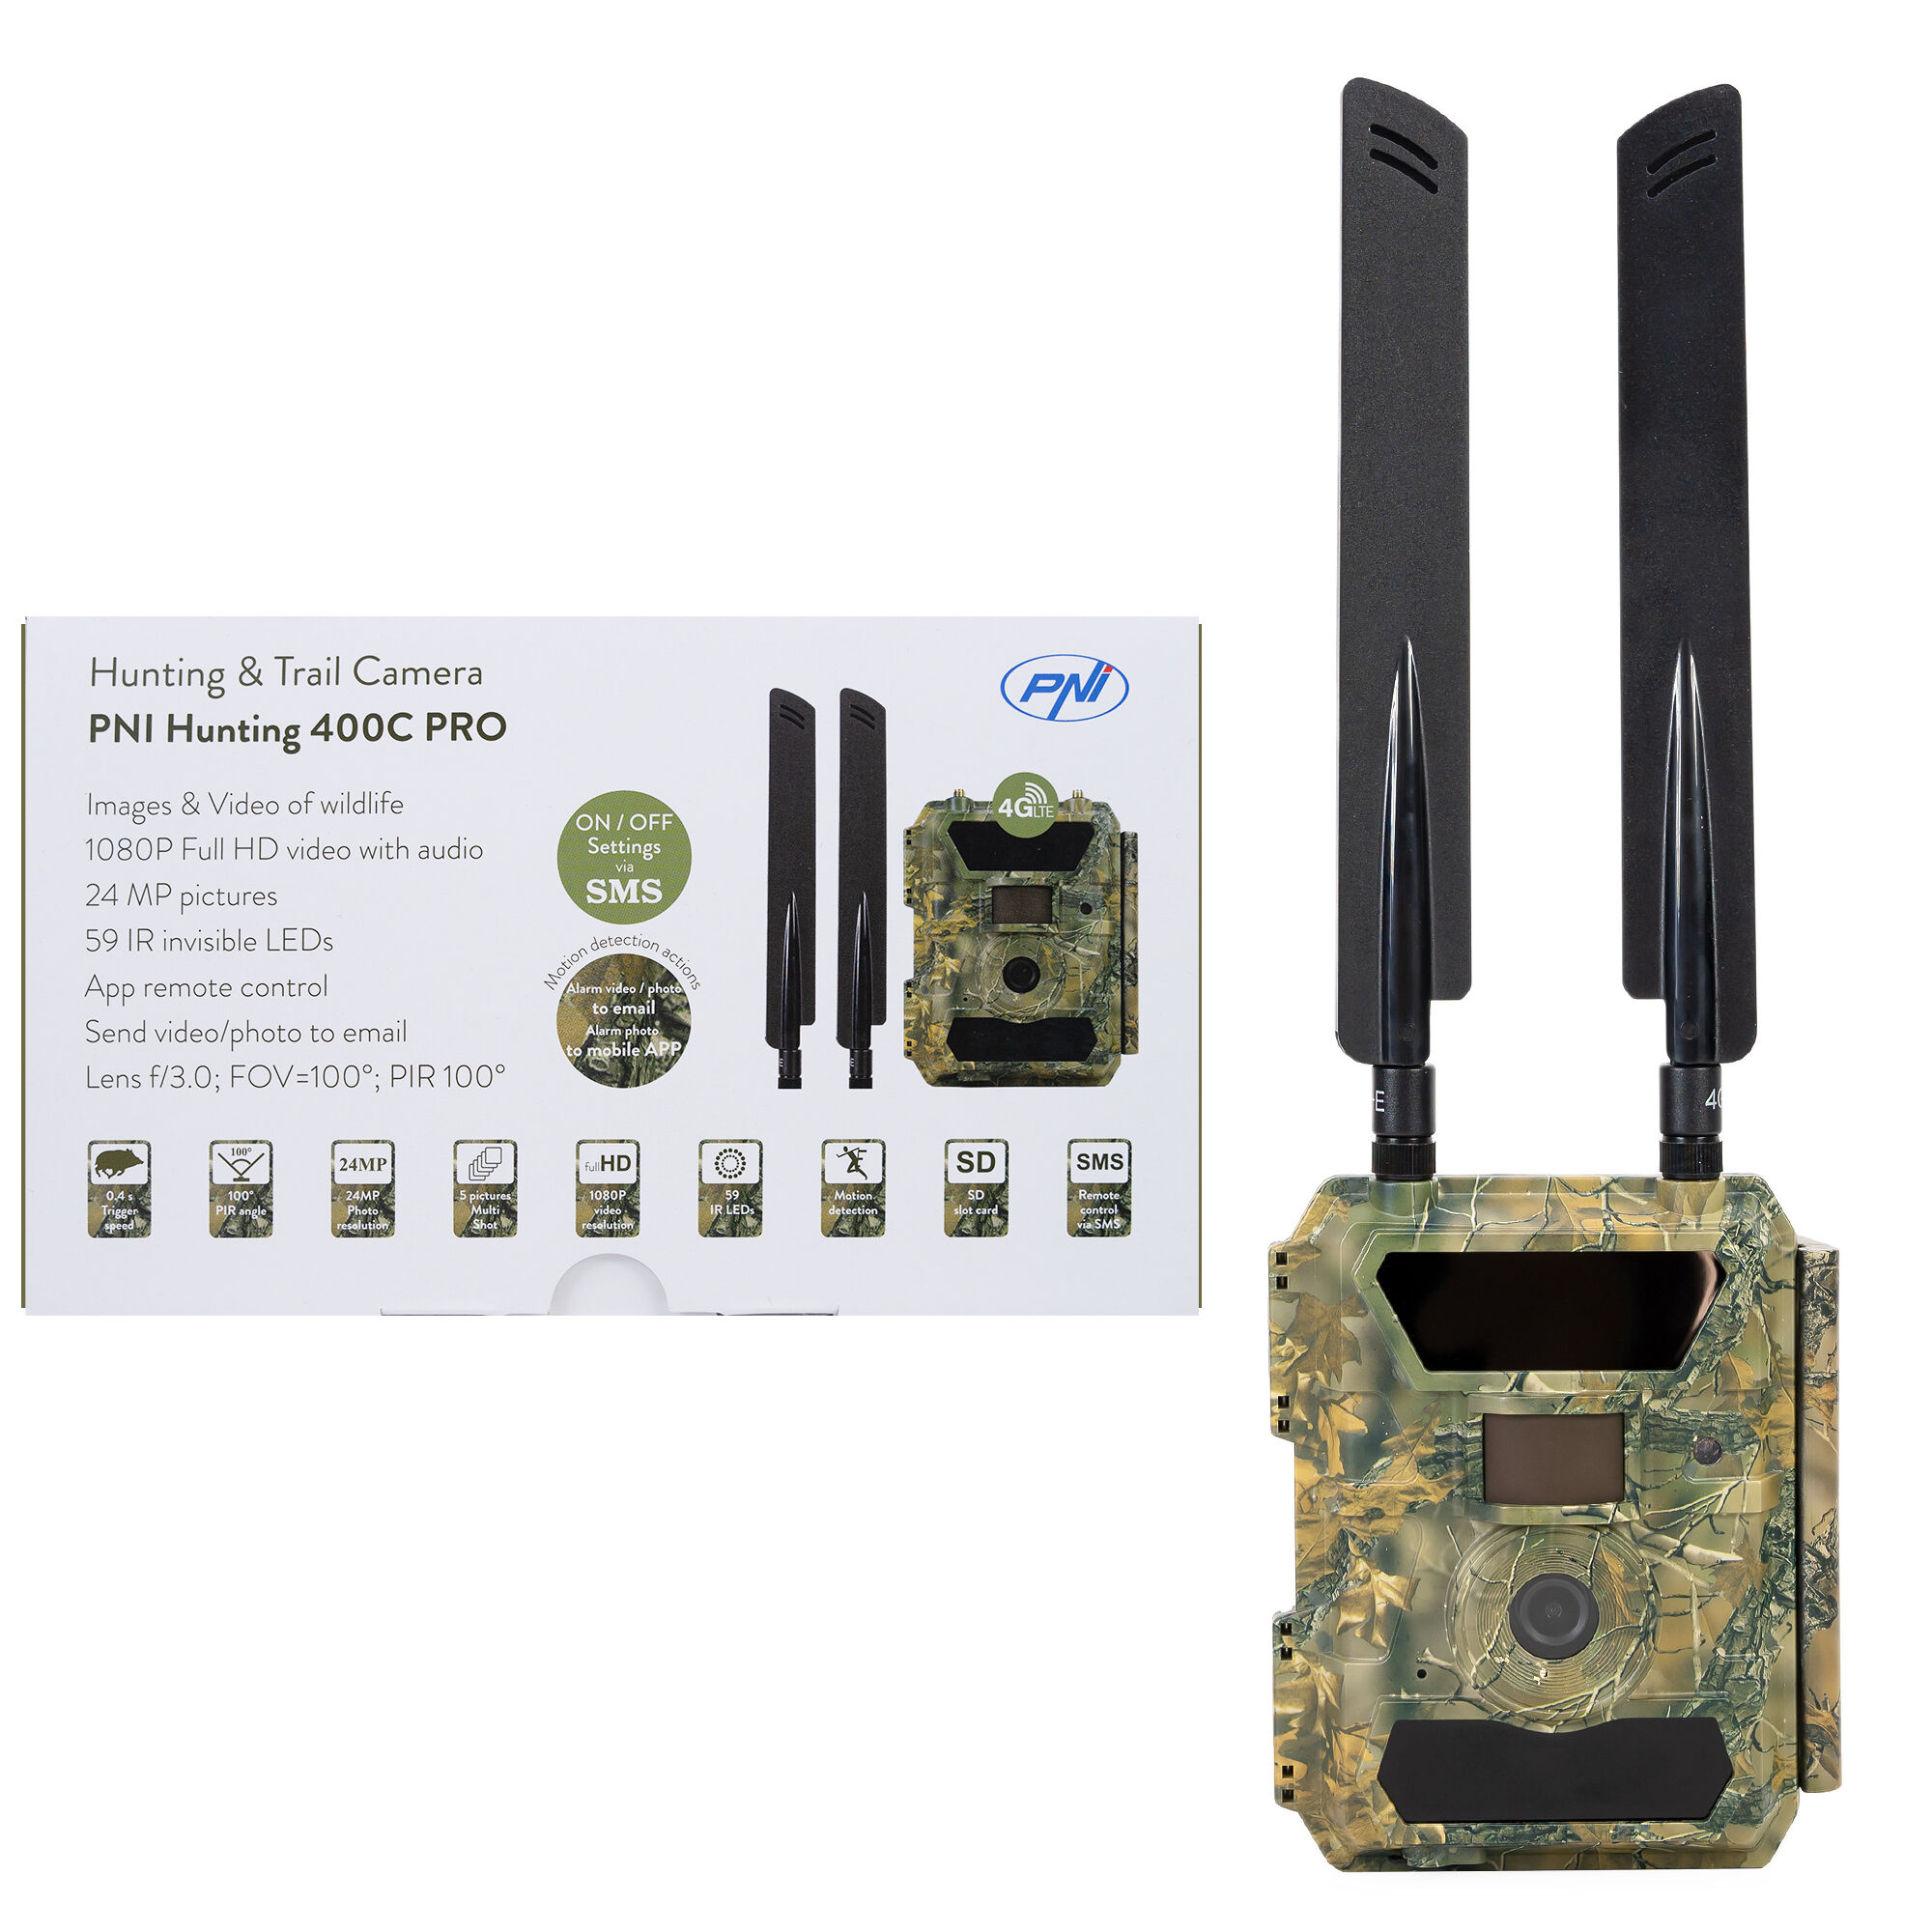 PNI Hunting 400C PRO 24MP Jagdkamera mit 4G LTE Internet, GPS